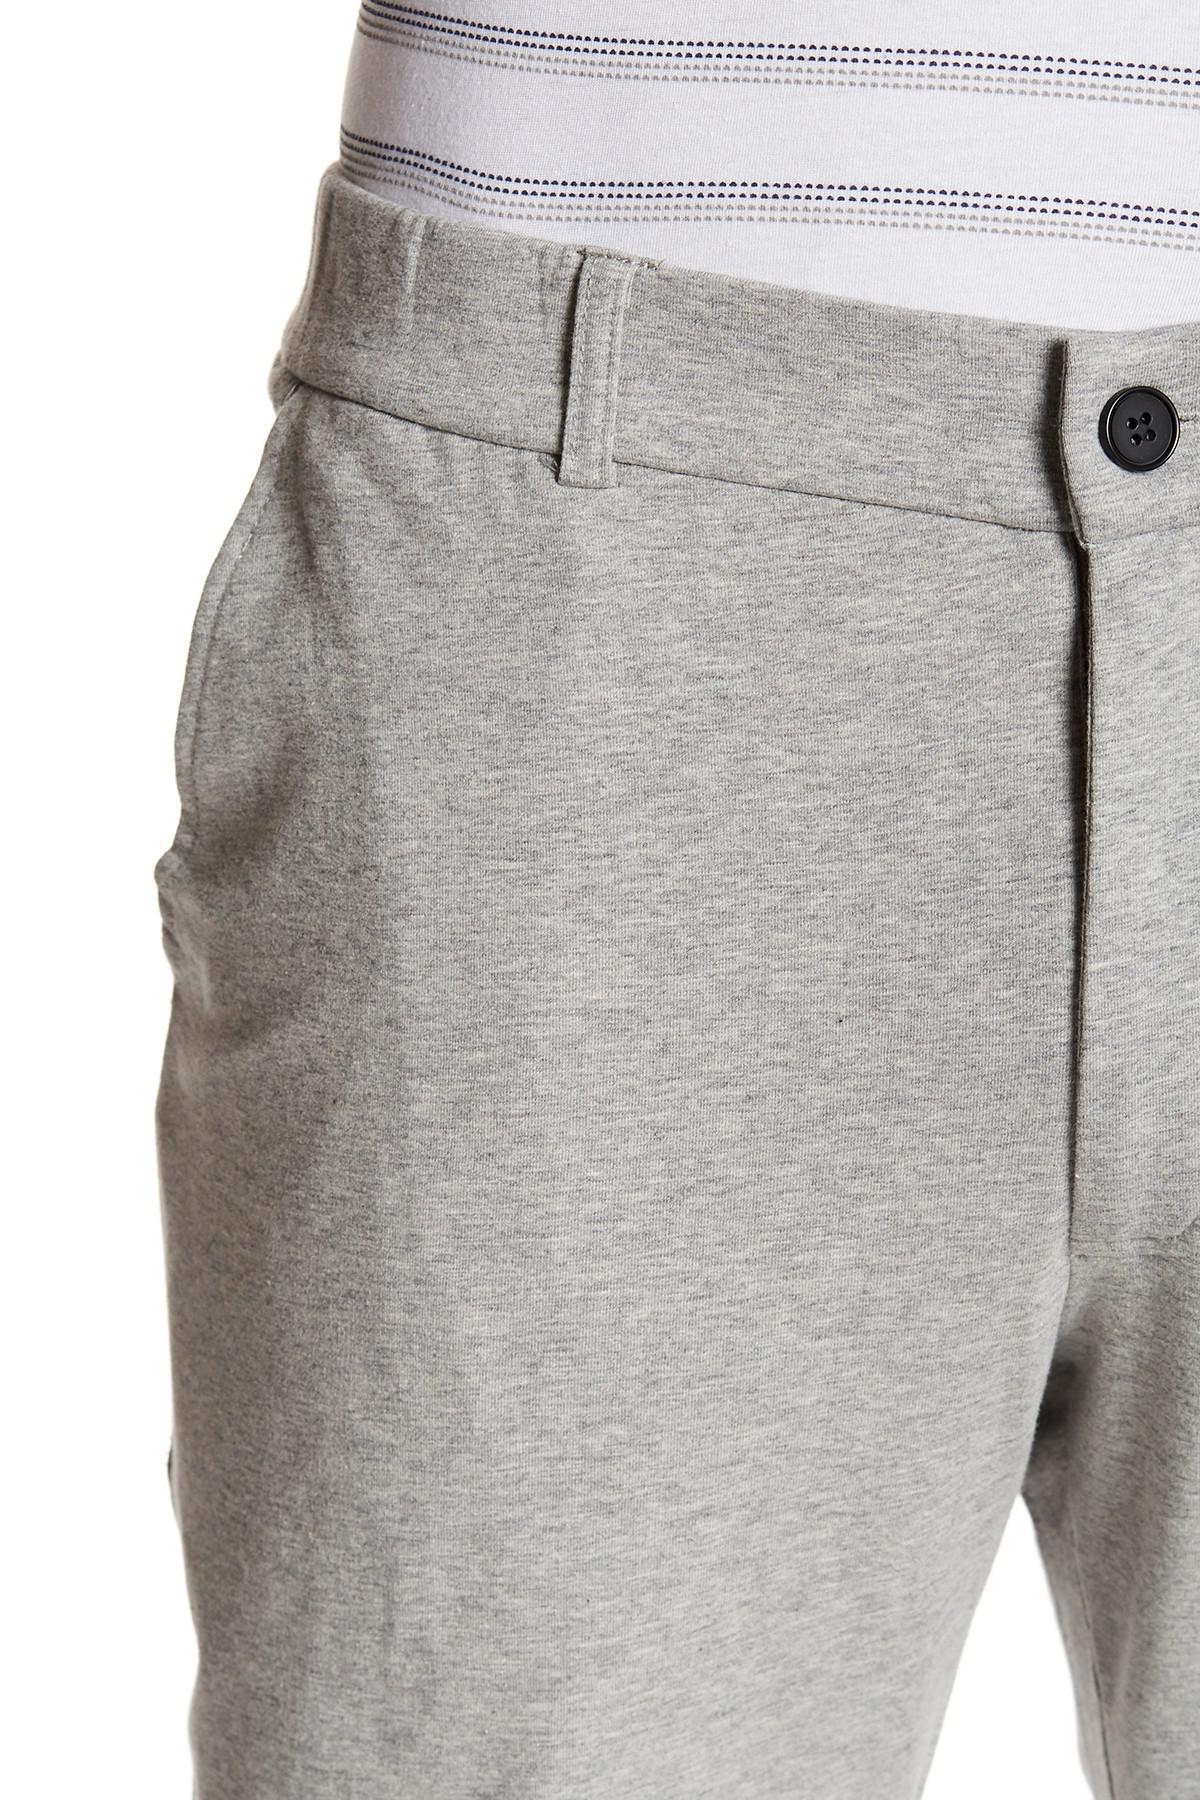 16786円再入荷品 販売 時期 FLY JOGGER PANTS カーゴパンツ 5 Pants Men Should NEVER Wear ...